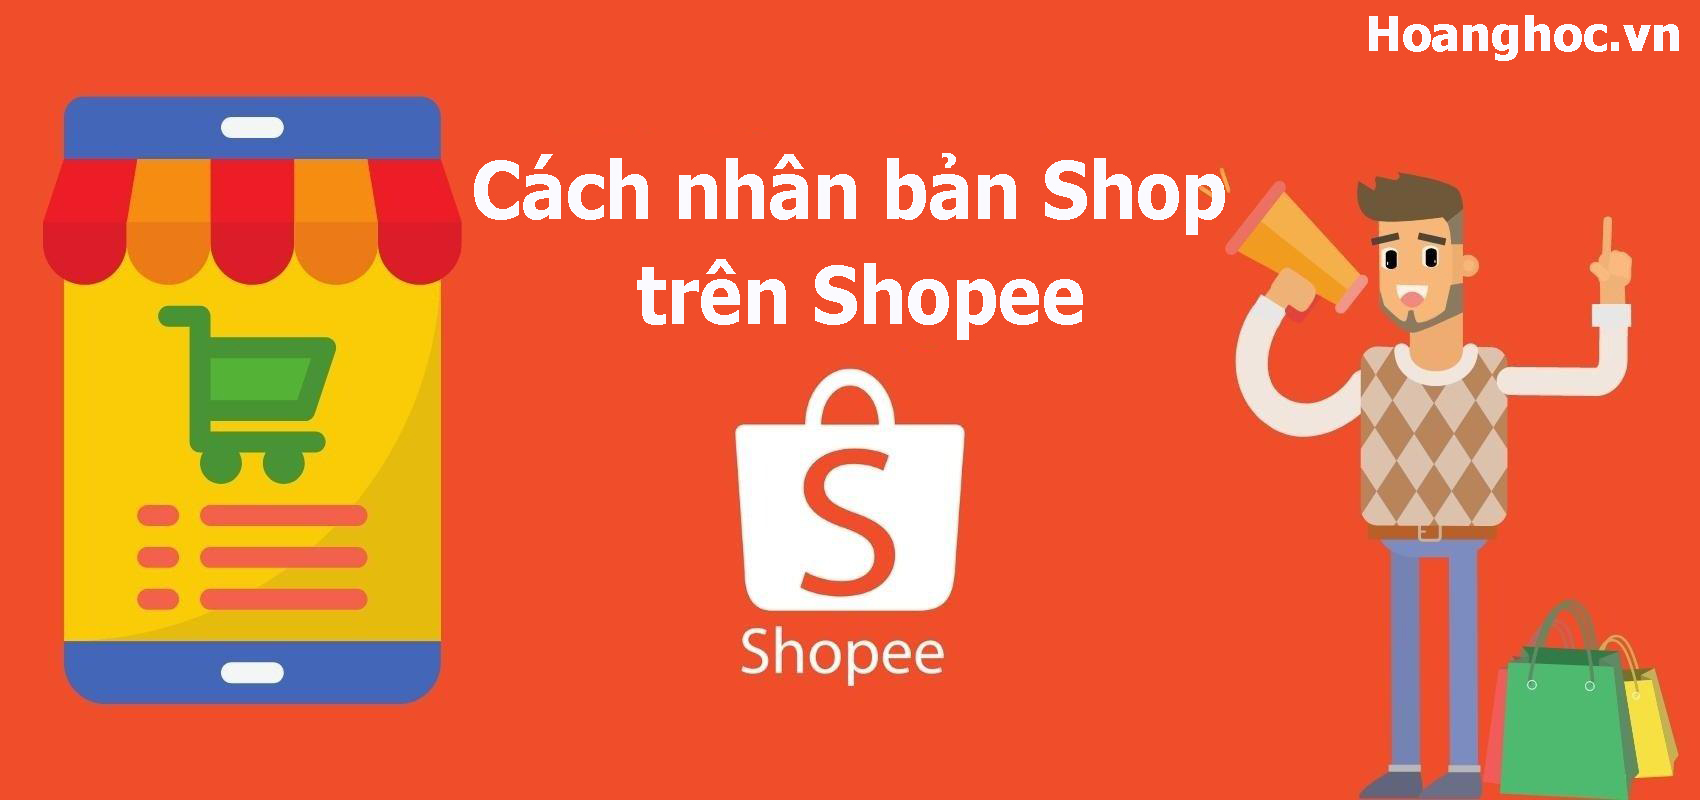 Copy Shopee và cách nhân bản Shop trên Shopee